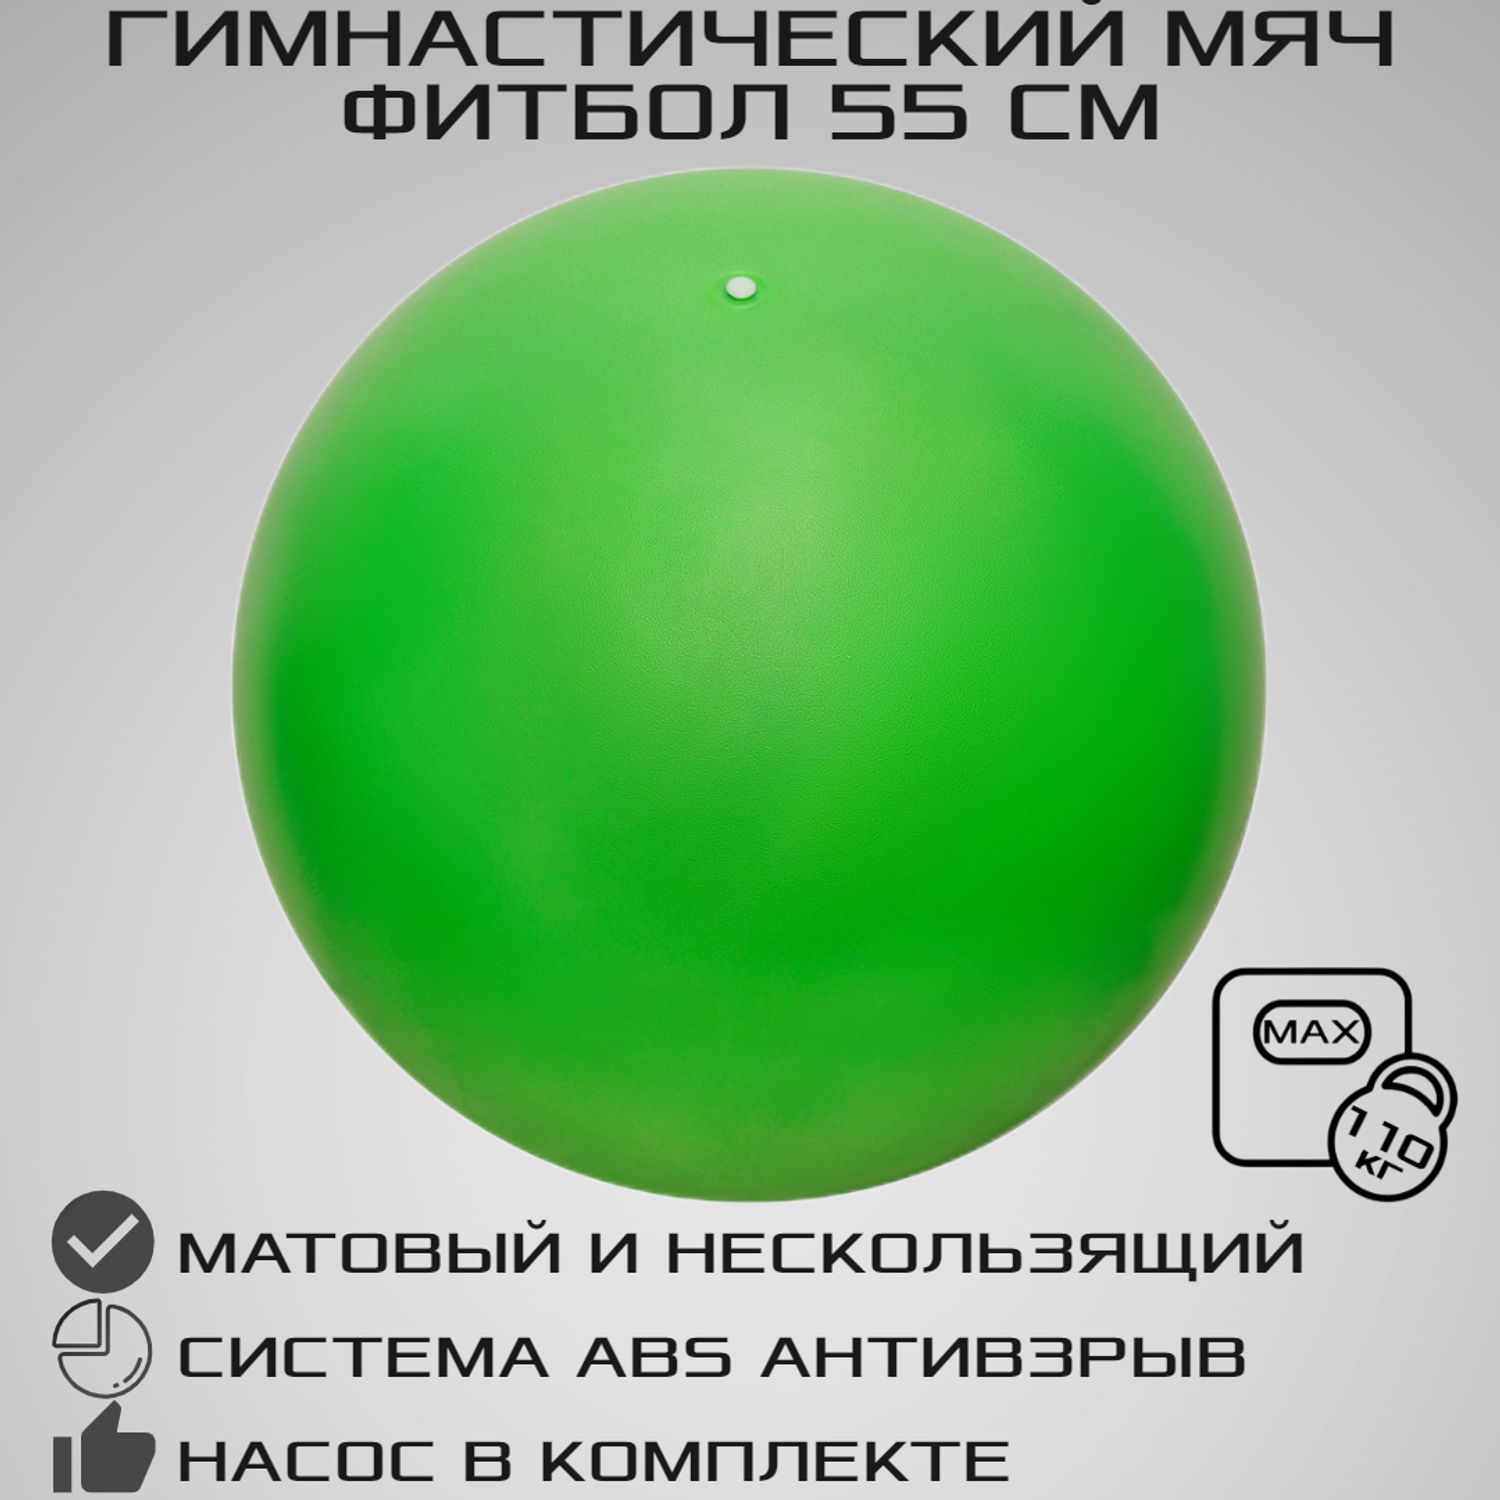 Фитбол STRONG BODY 55 см ABS антивзрыв зеленый для фитнеса Насос в комплекте - фото 1